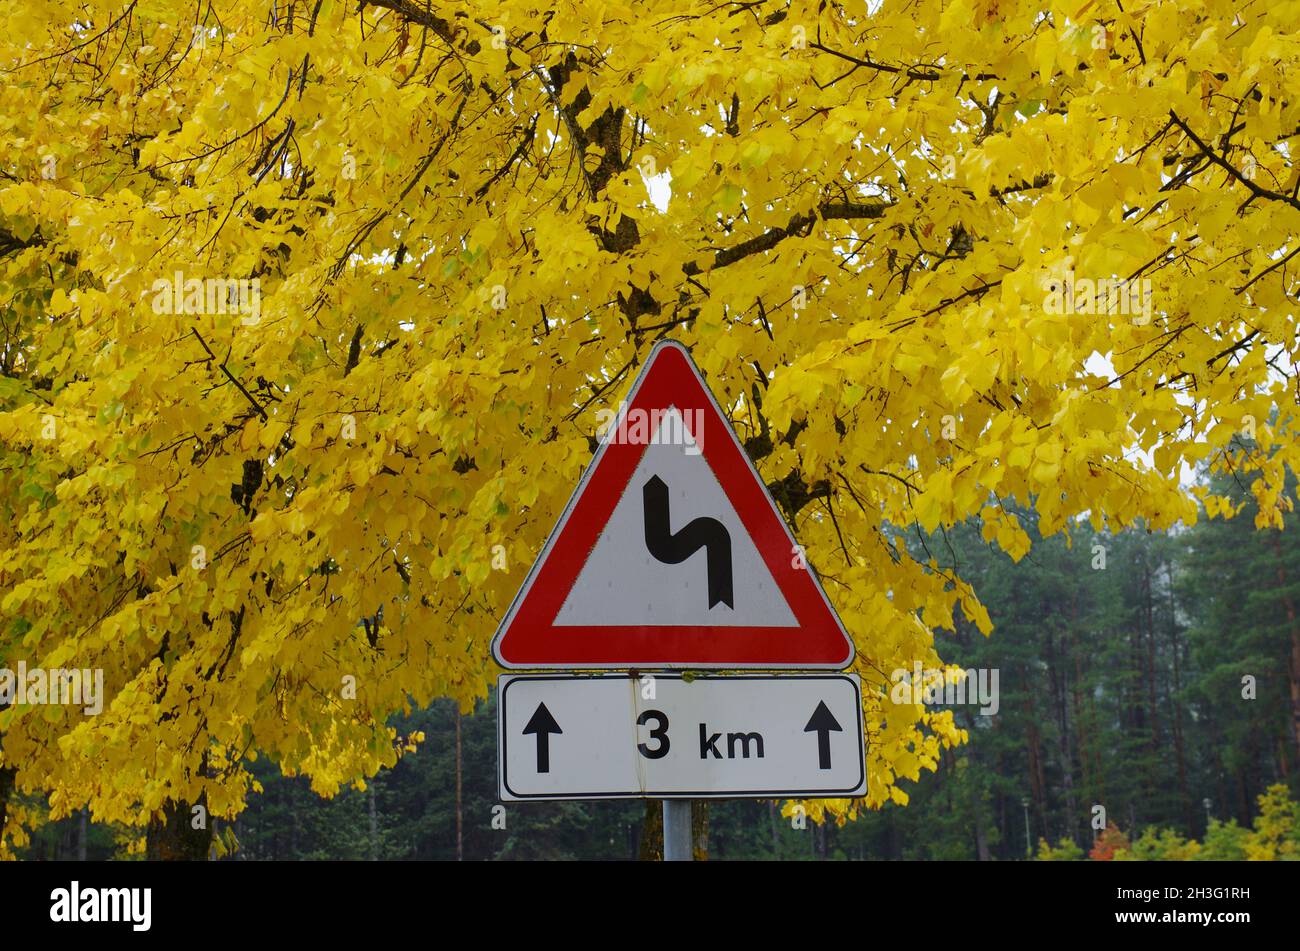 In primo piano un cartello stradale che indica una serie di curve per 3 km e sullo sfondo foglie gialle di un albero in autunno Foto Stock